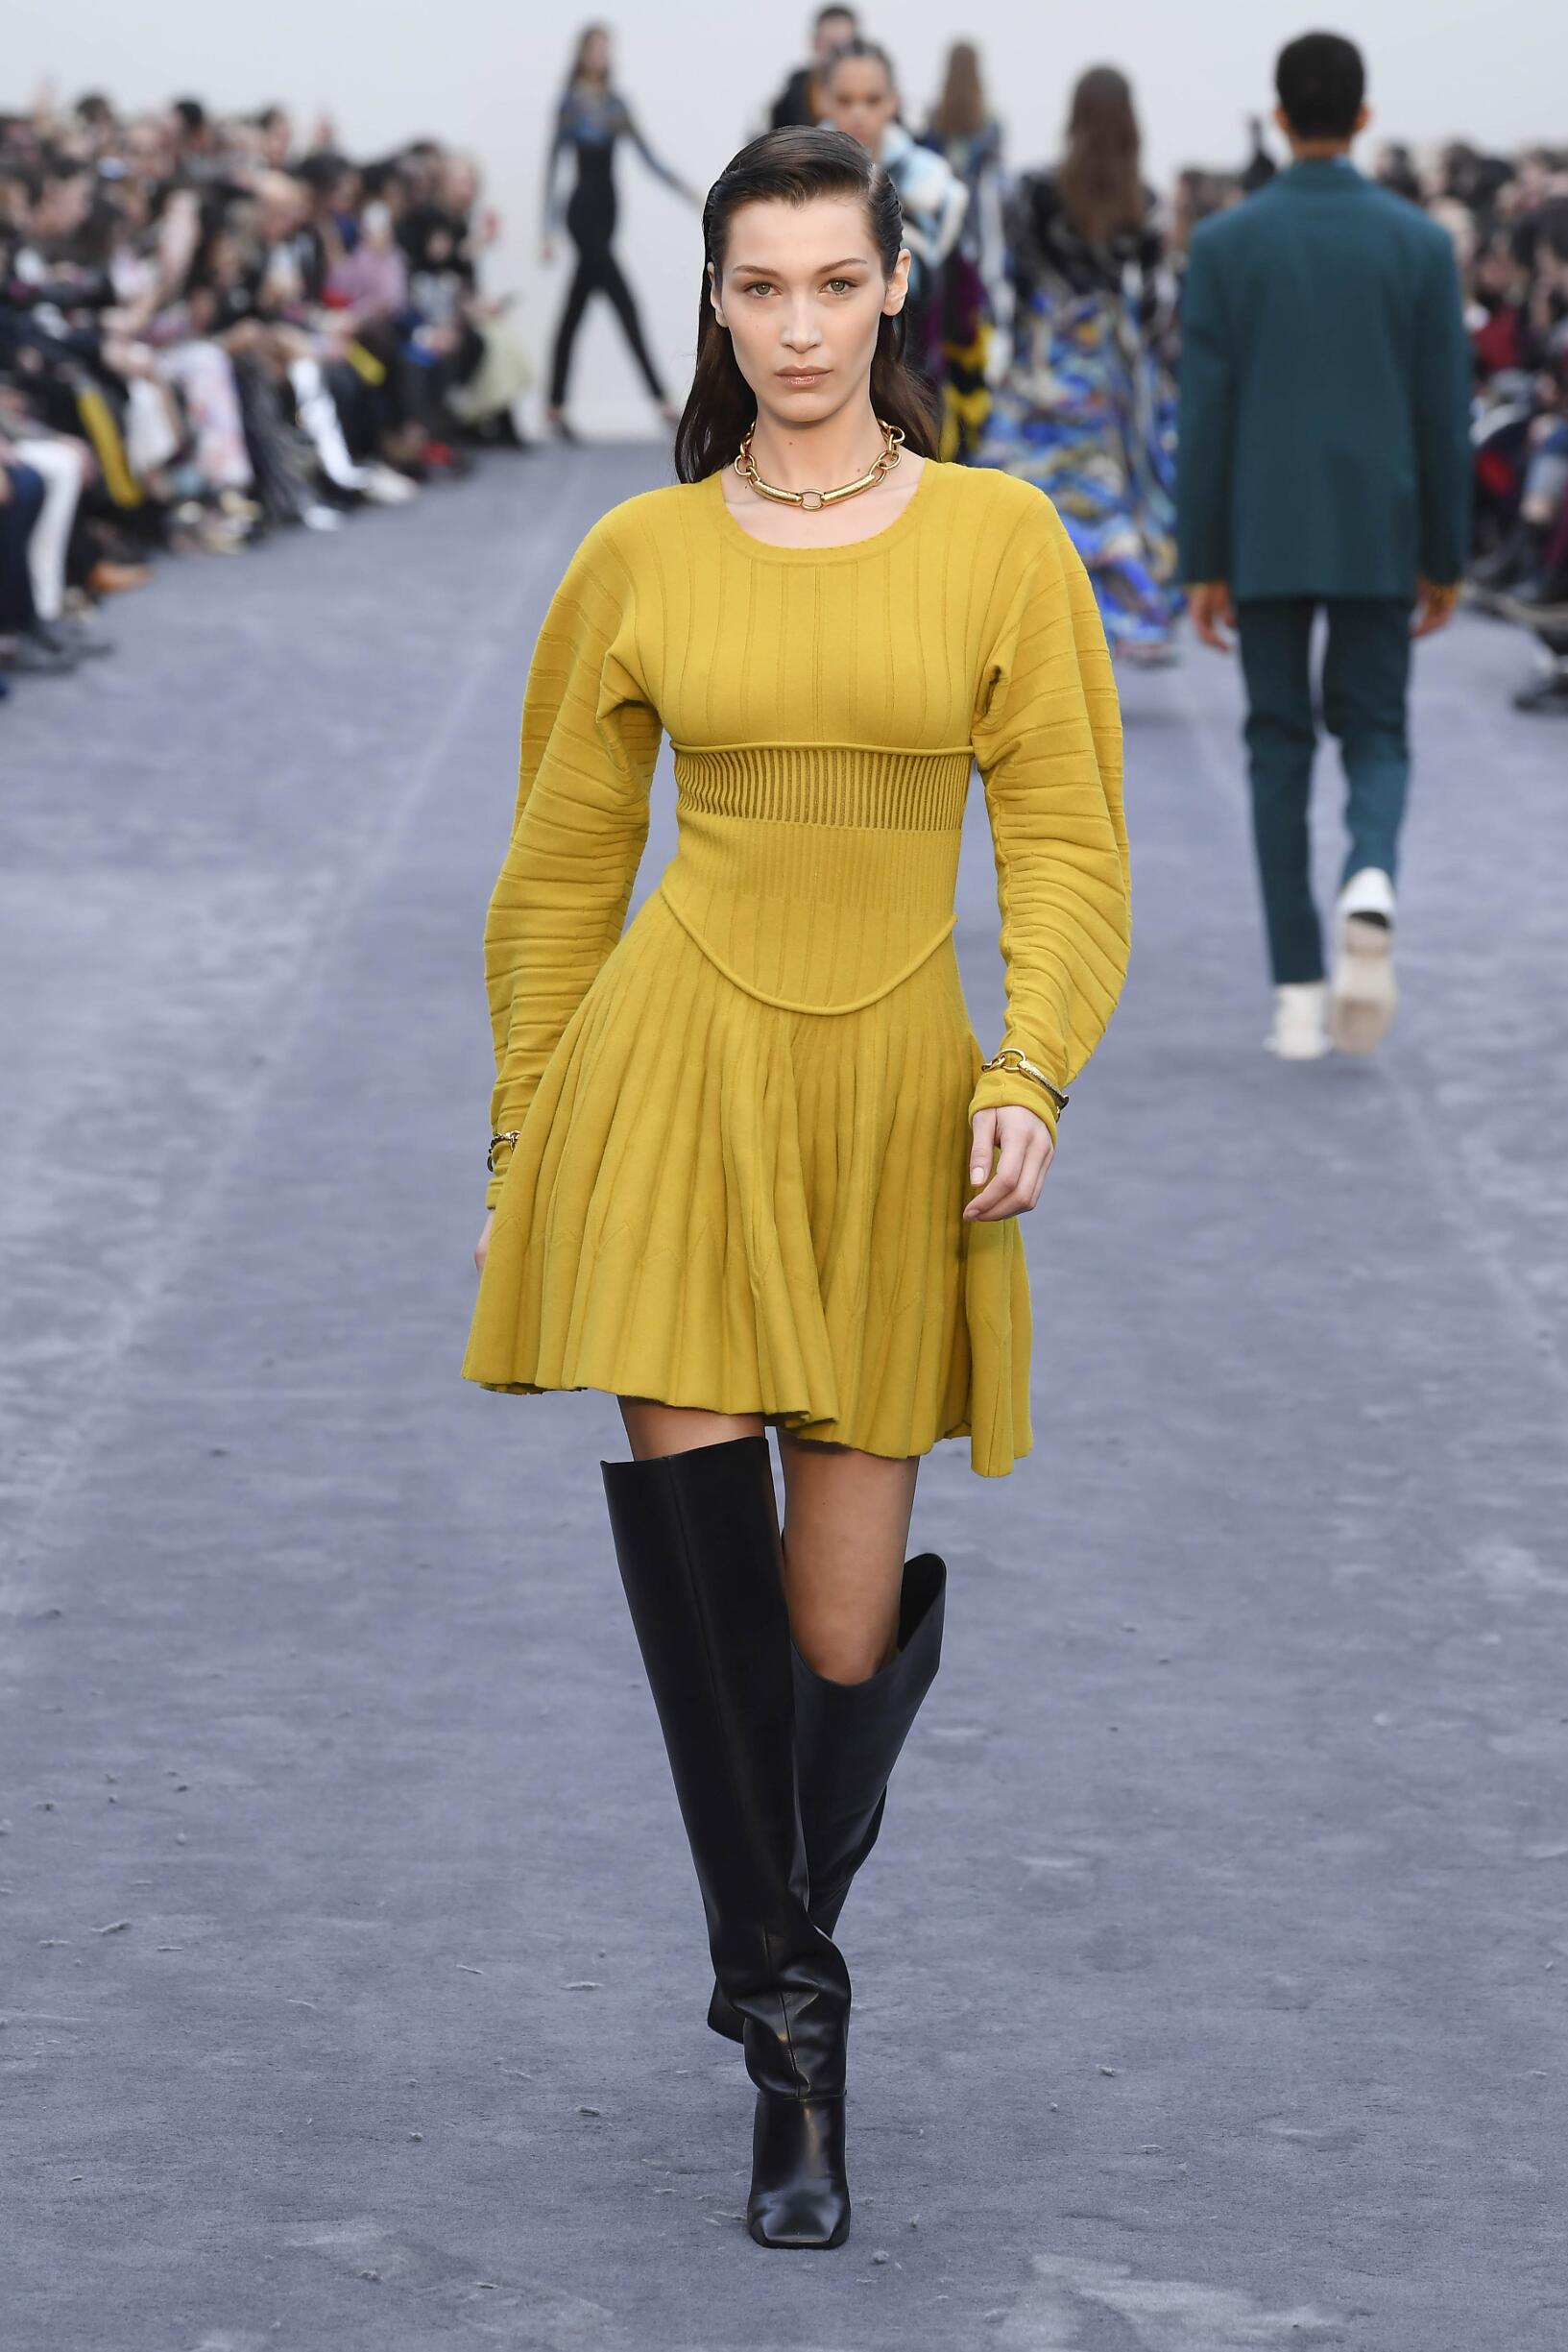 Winter 2019 Fashion Trends Roberto Cavalli